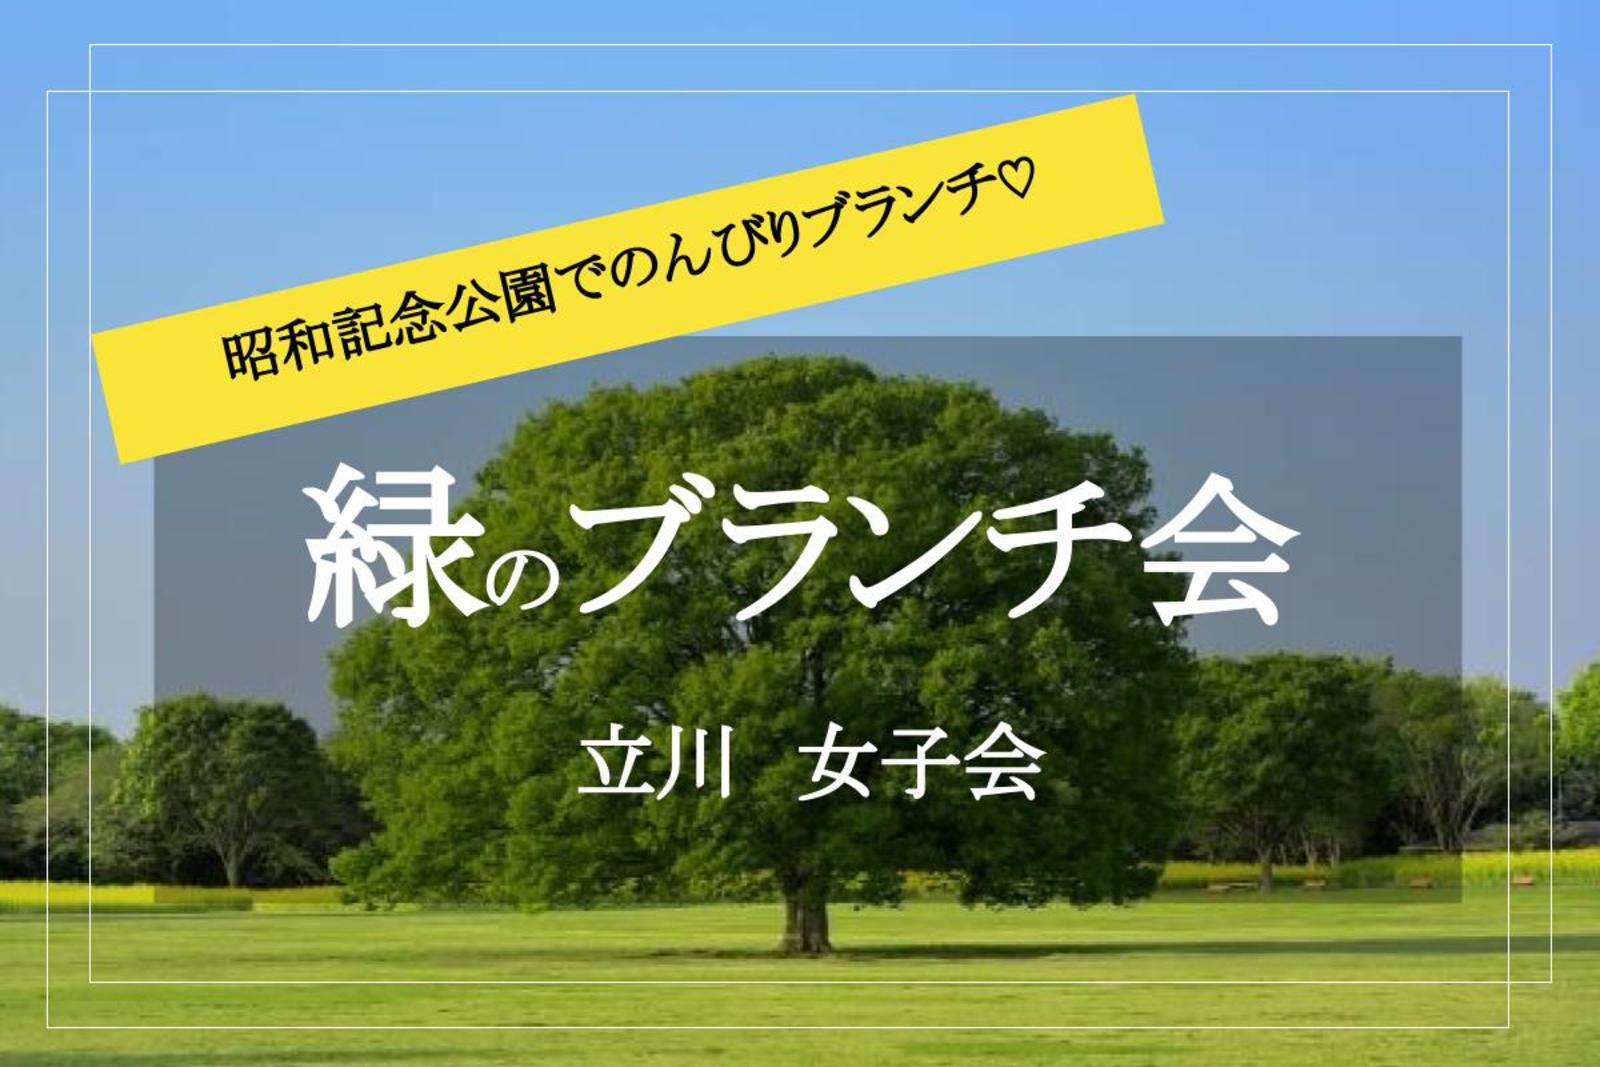 【ブランチ女子会×昭和記念公園】フルーツサンドやカフェオレをもって、昭和記念公園にいこう♡